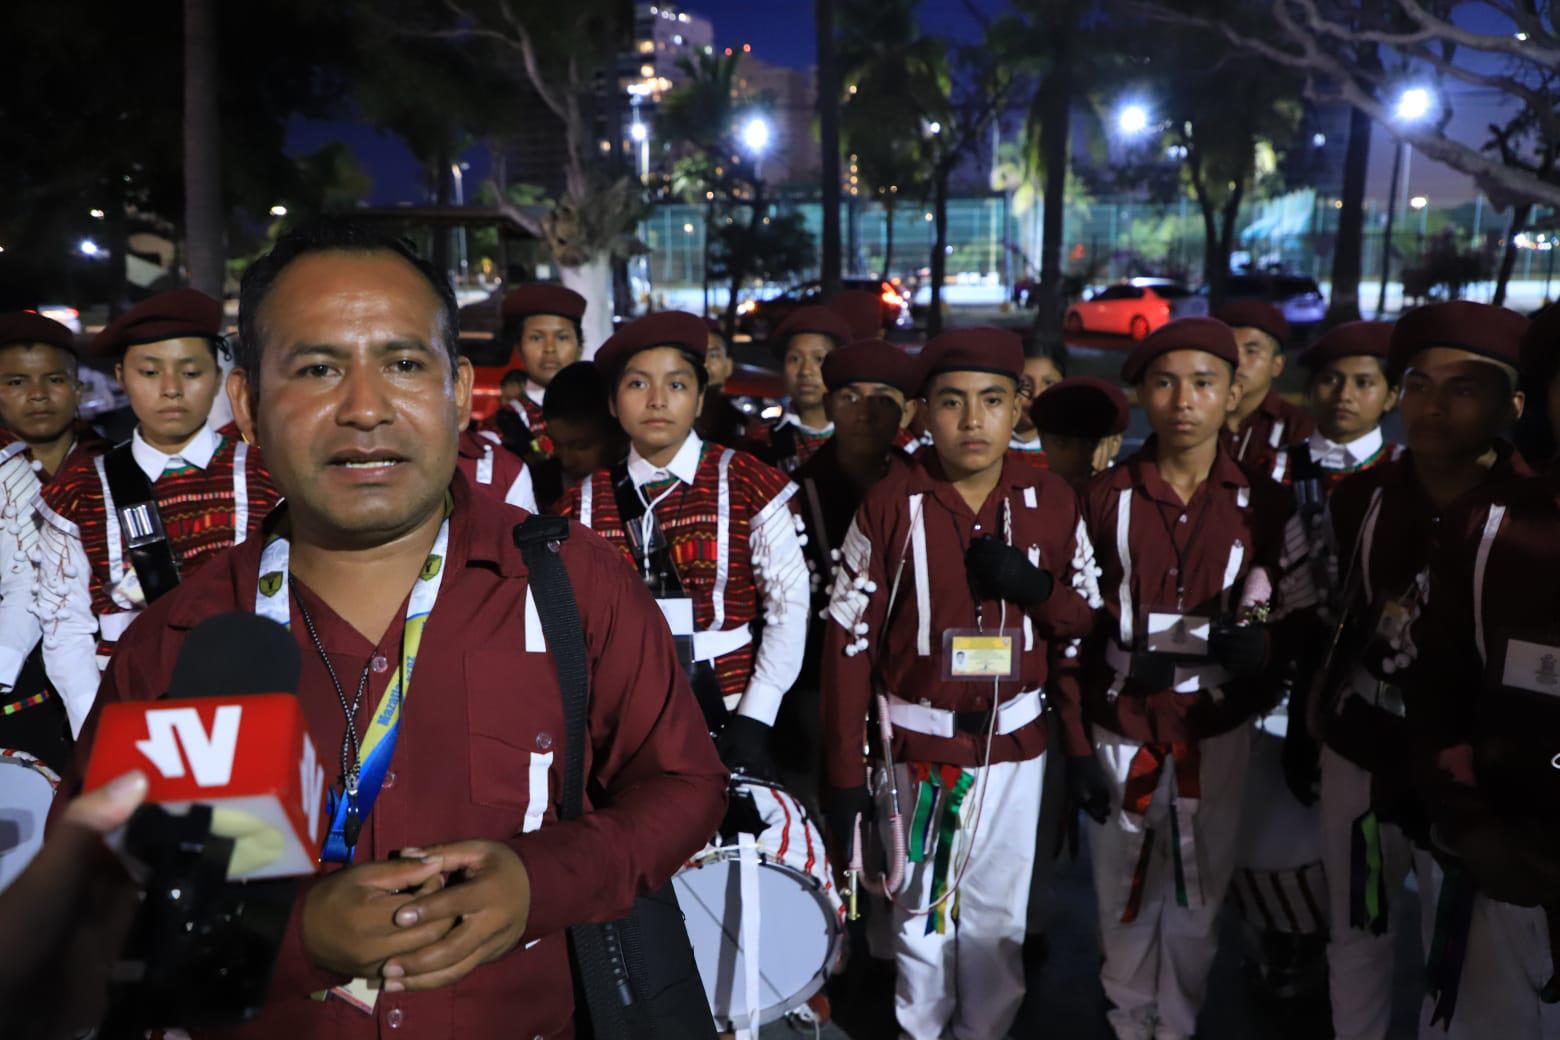 $!Viajan Niños Triquis miles de kilómetros para competencia de bandas de guerra en Mazatlán